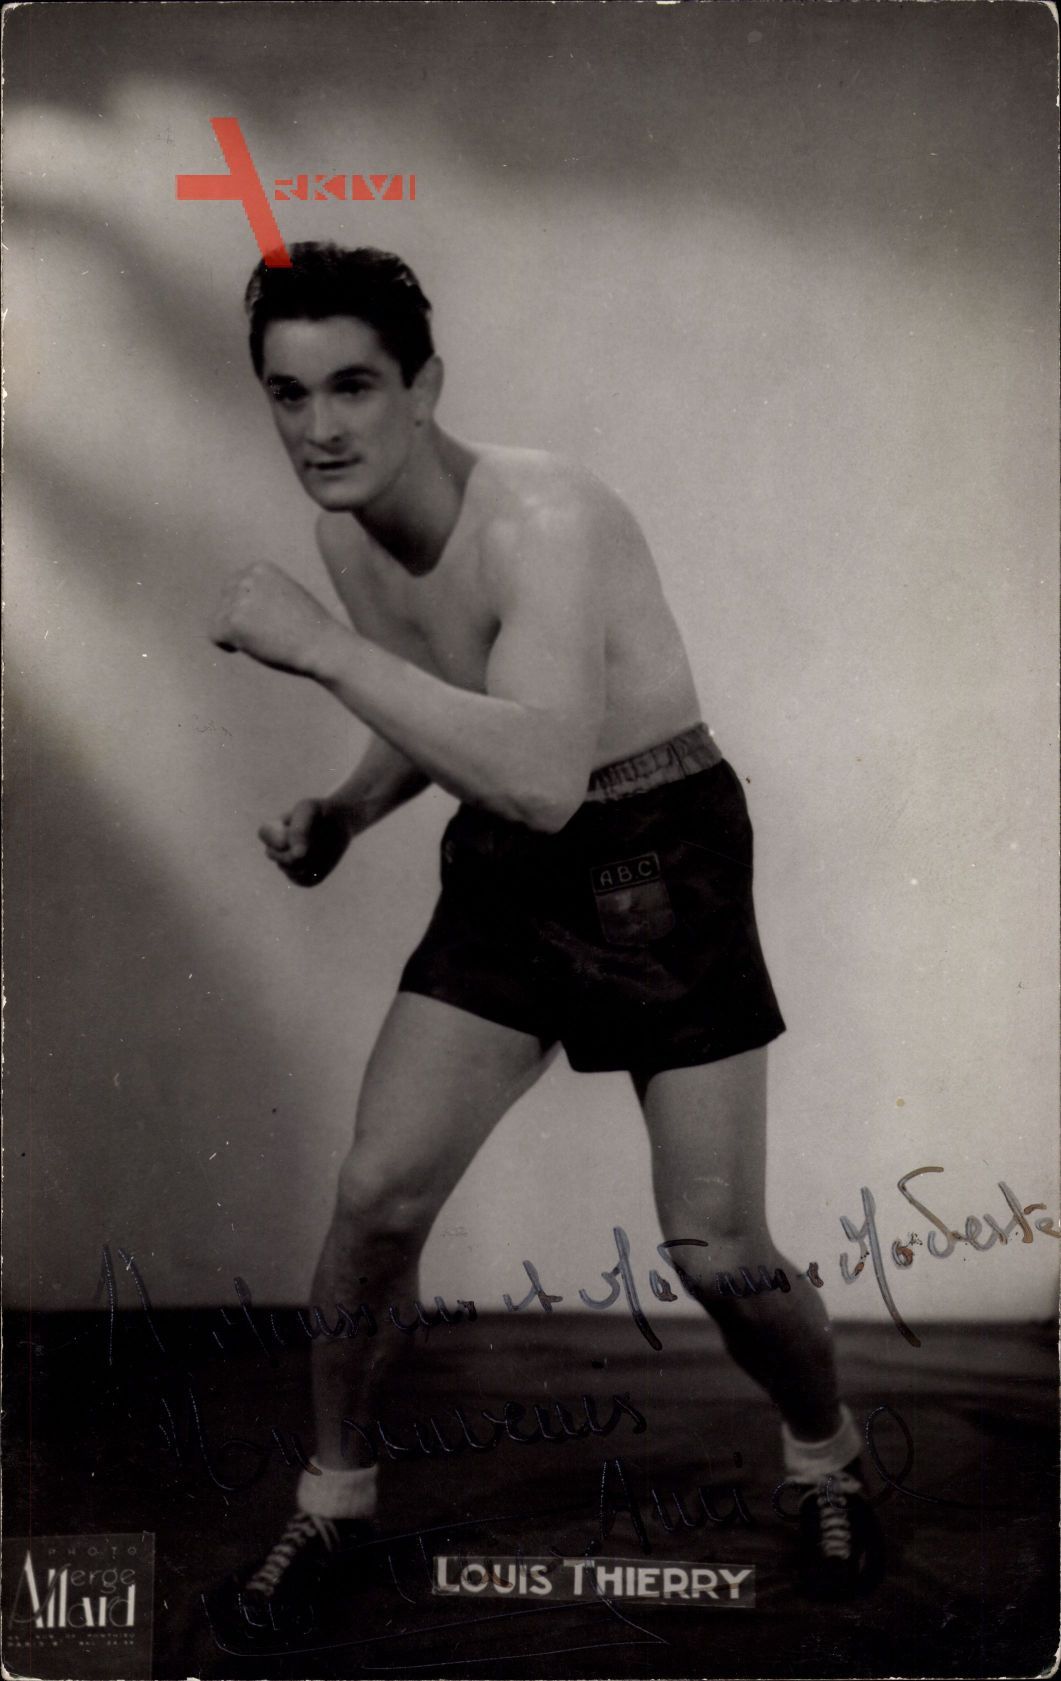 Französischer Boxer Louis Thierry, mit Autogramm